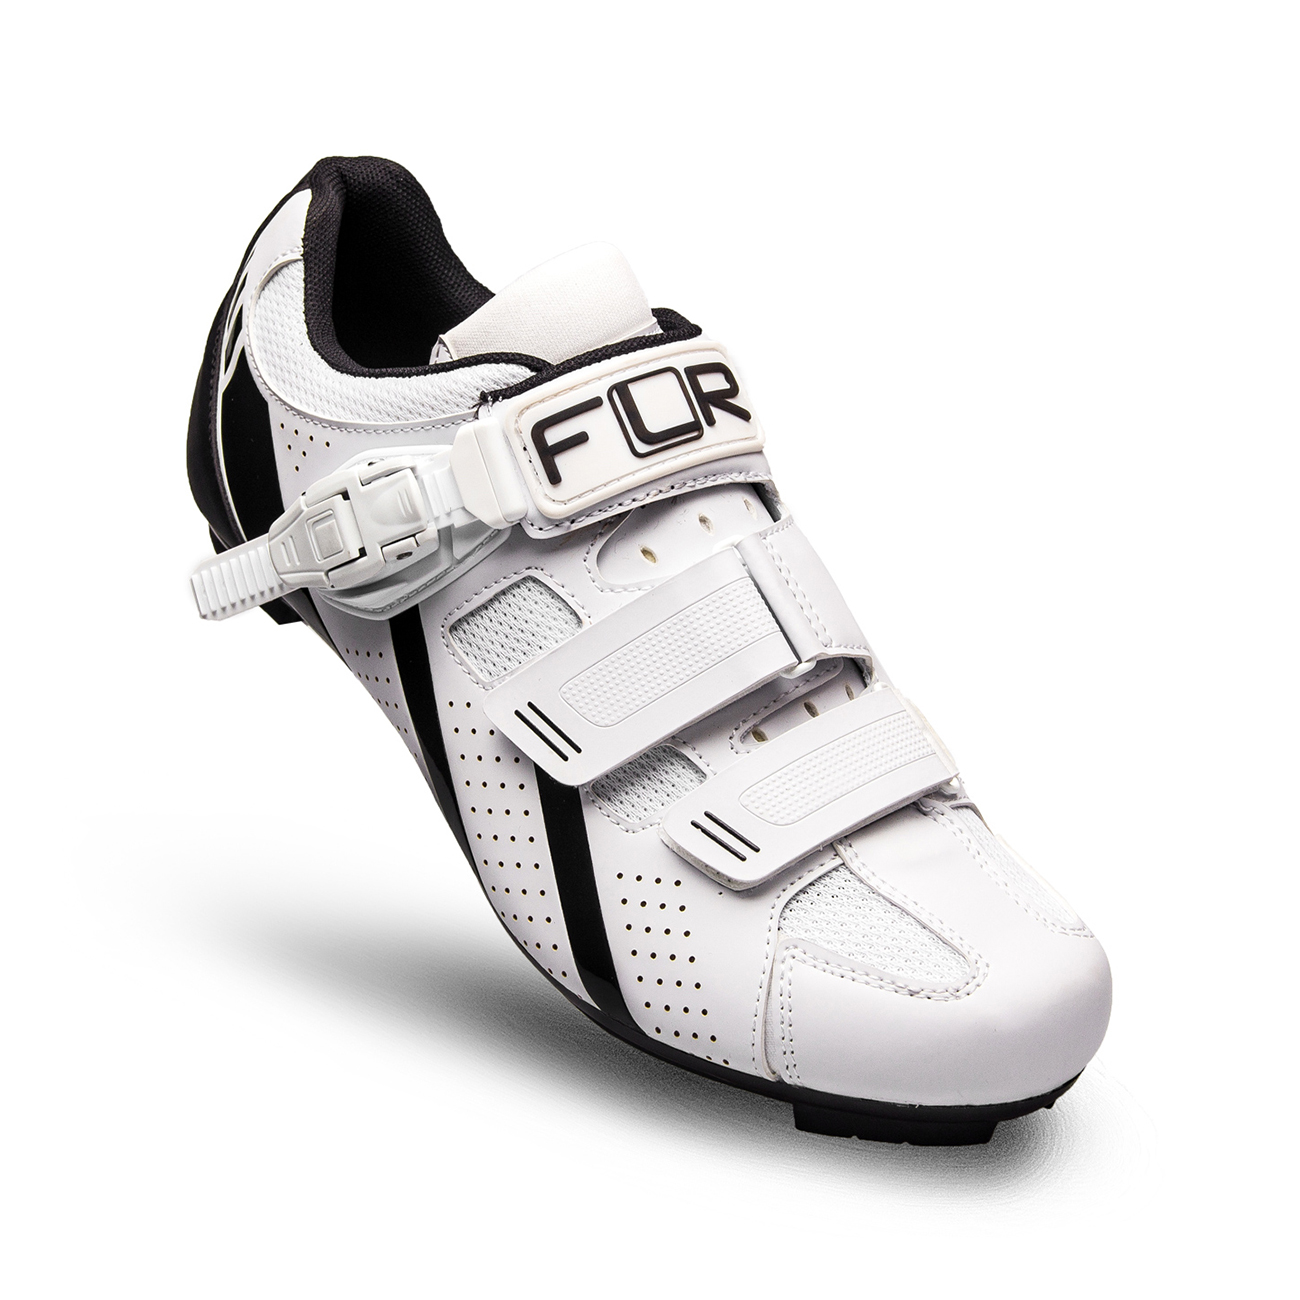 
                FLR Cyklistické tretry - F15 - bílá/černá 45
            